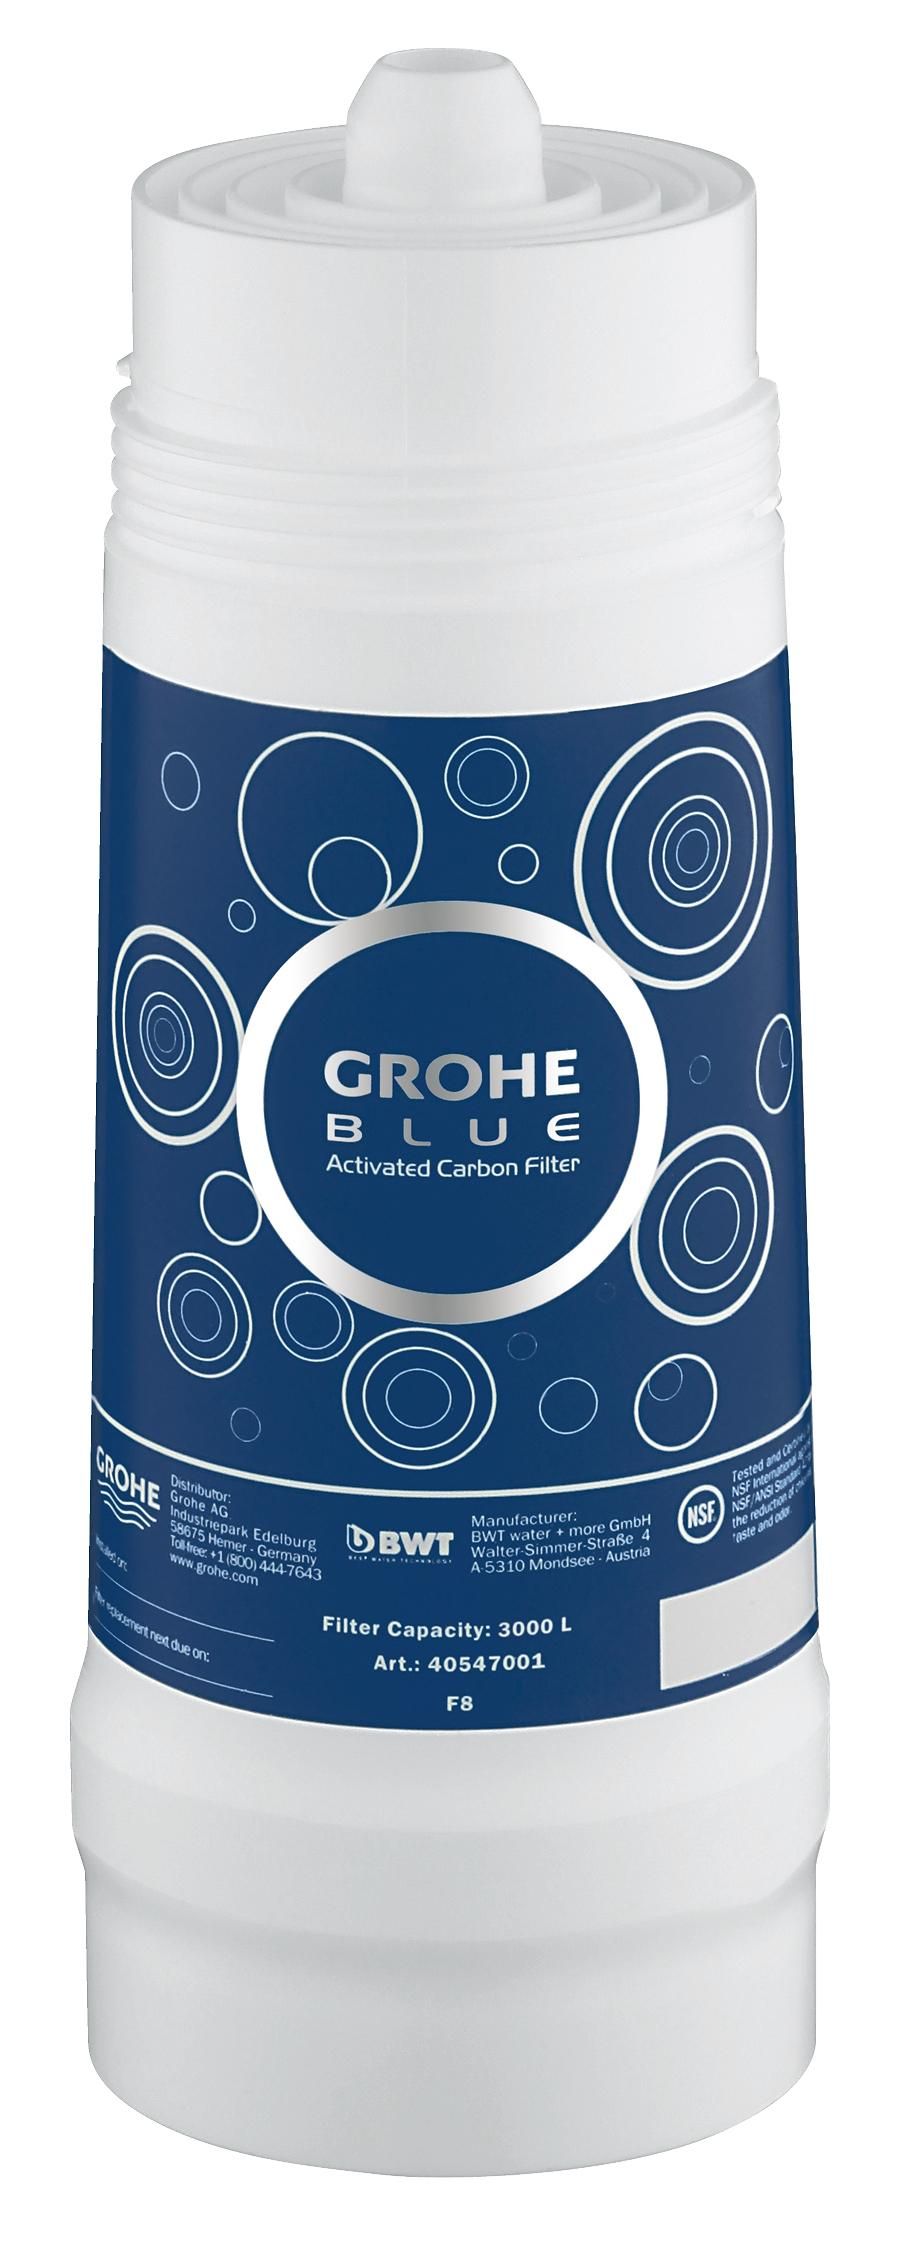 Сменный фильтр для водных систем GROHE Blue (600 литров) new